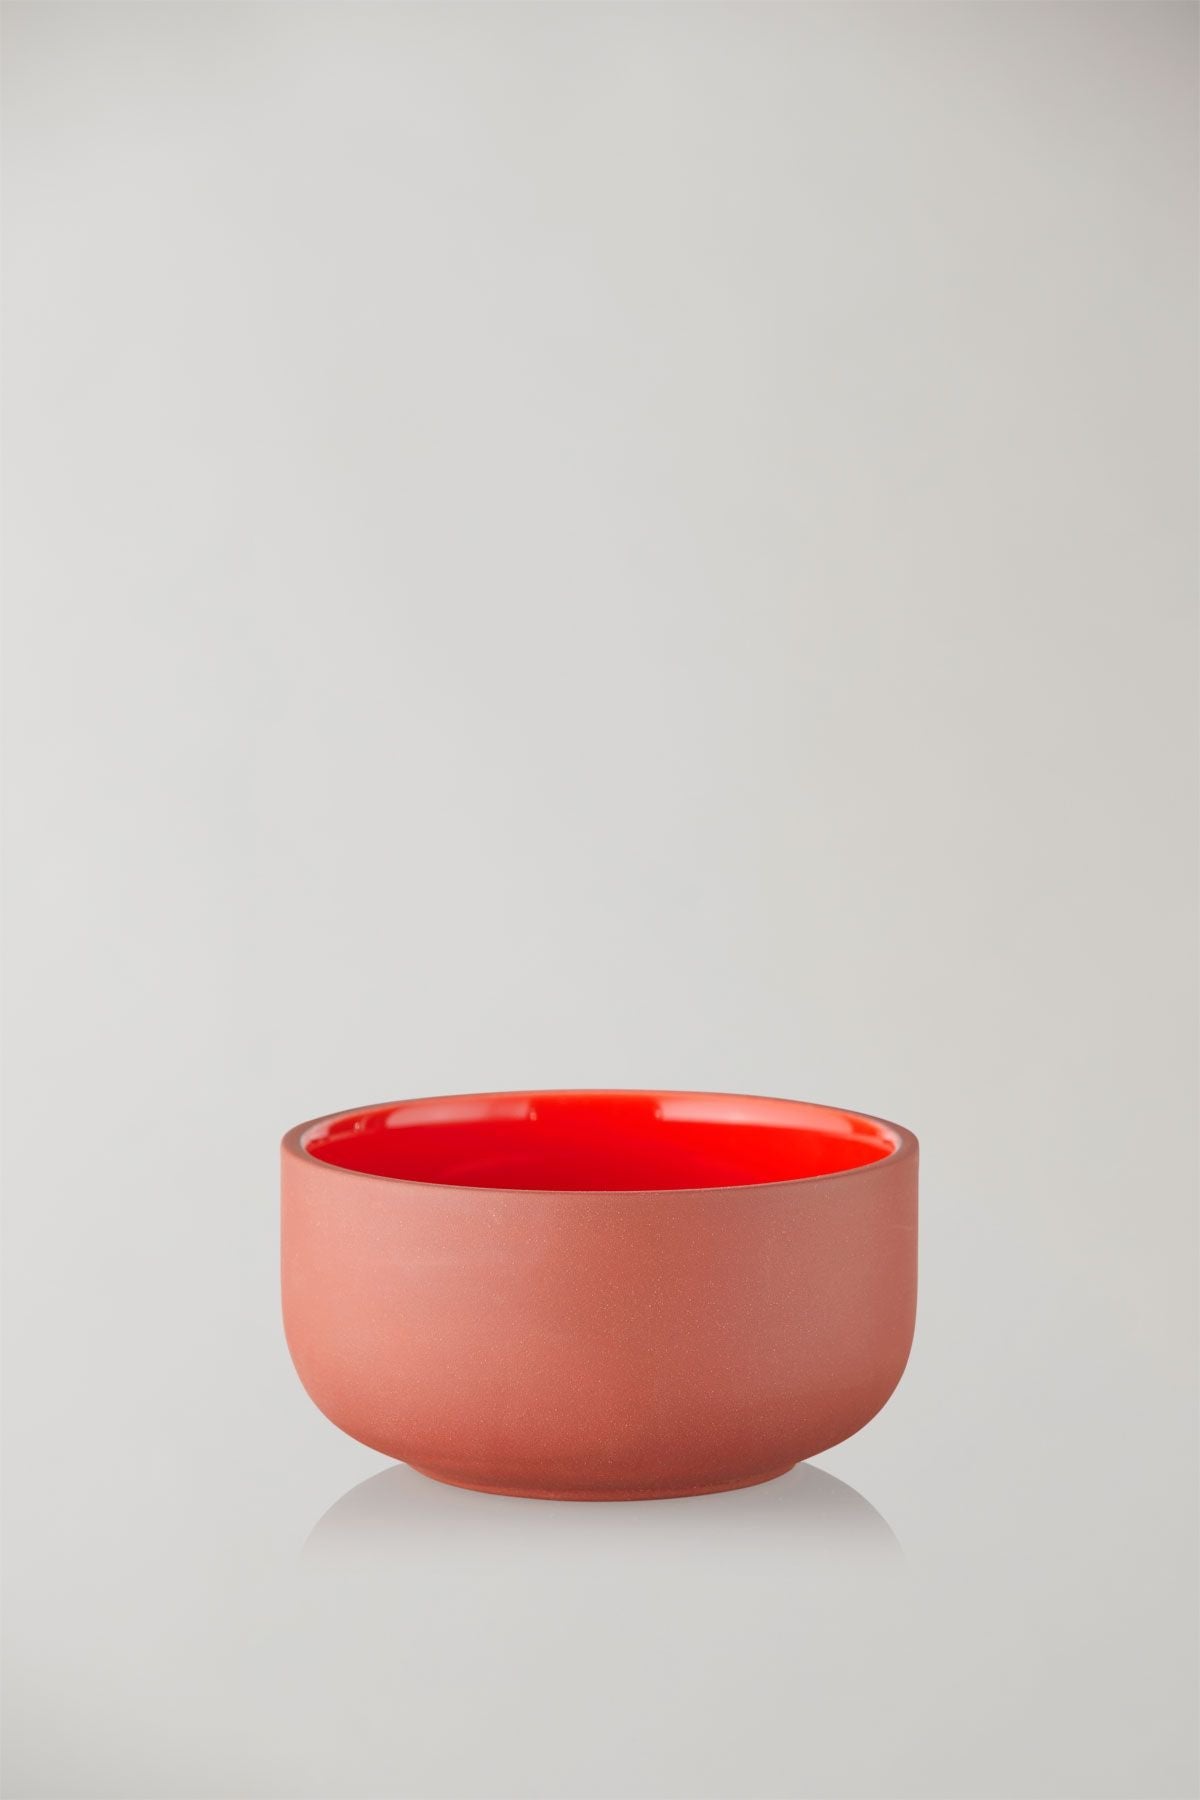 Studio über Clayware -Set von 2 Schalen, Terrakotta/Rot